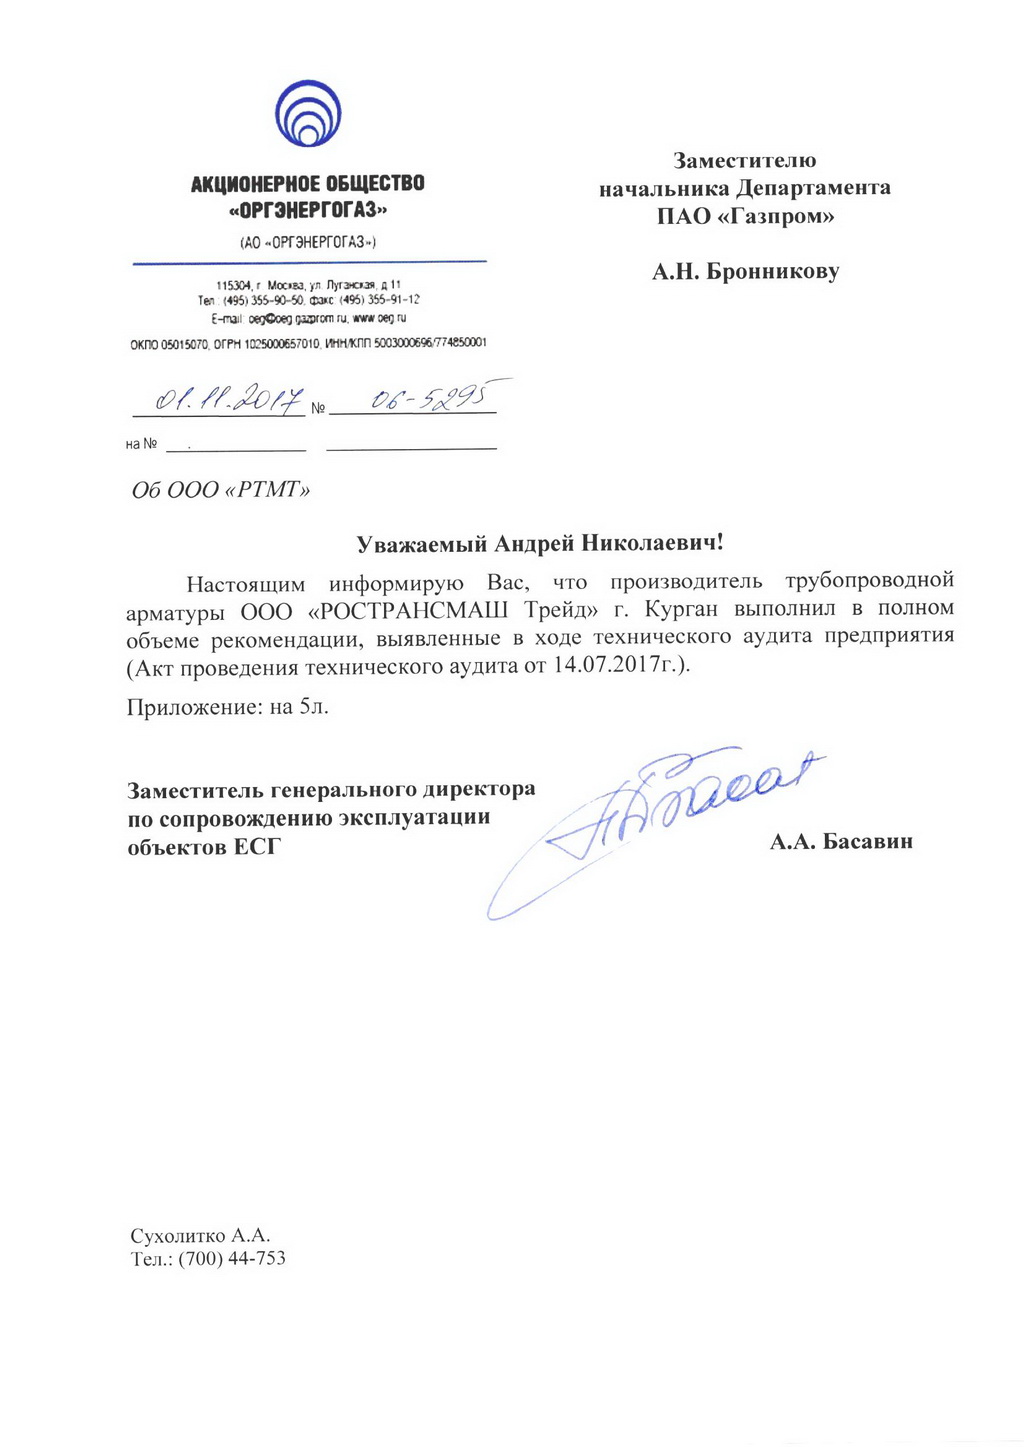 Все рекомендации Газпрома выполнены